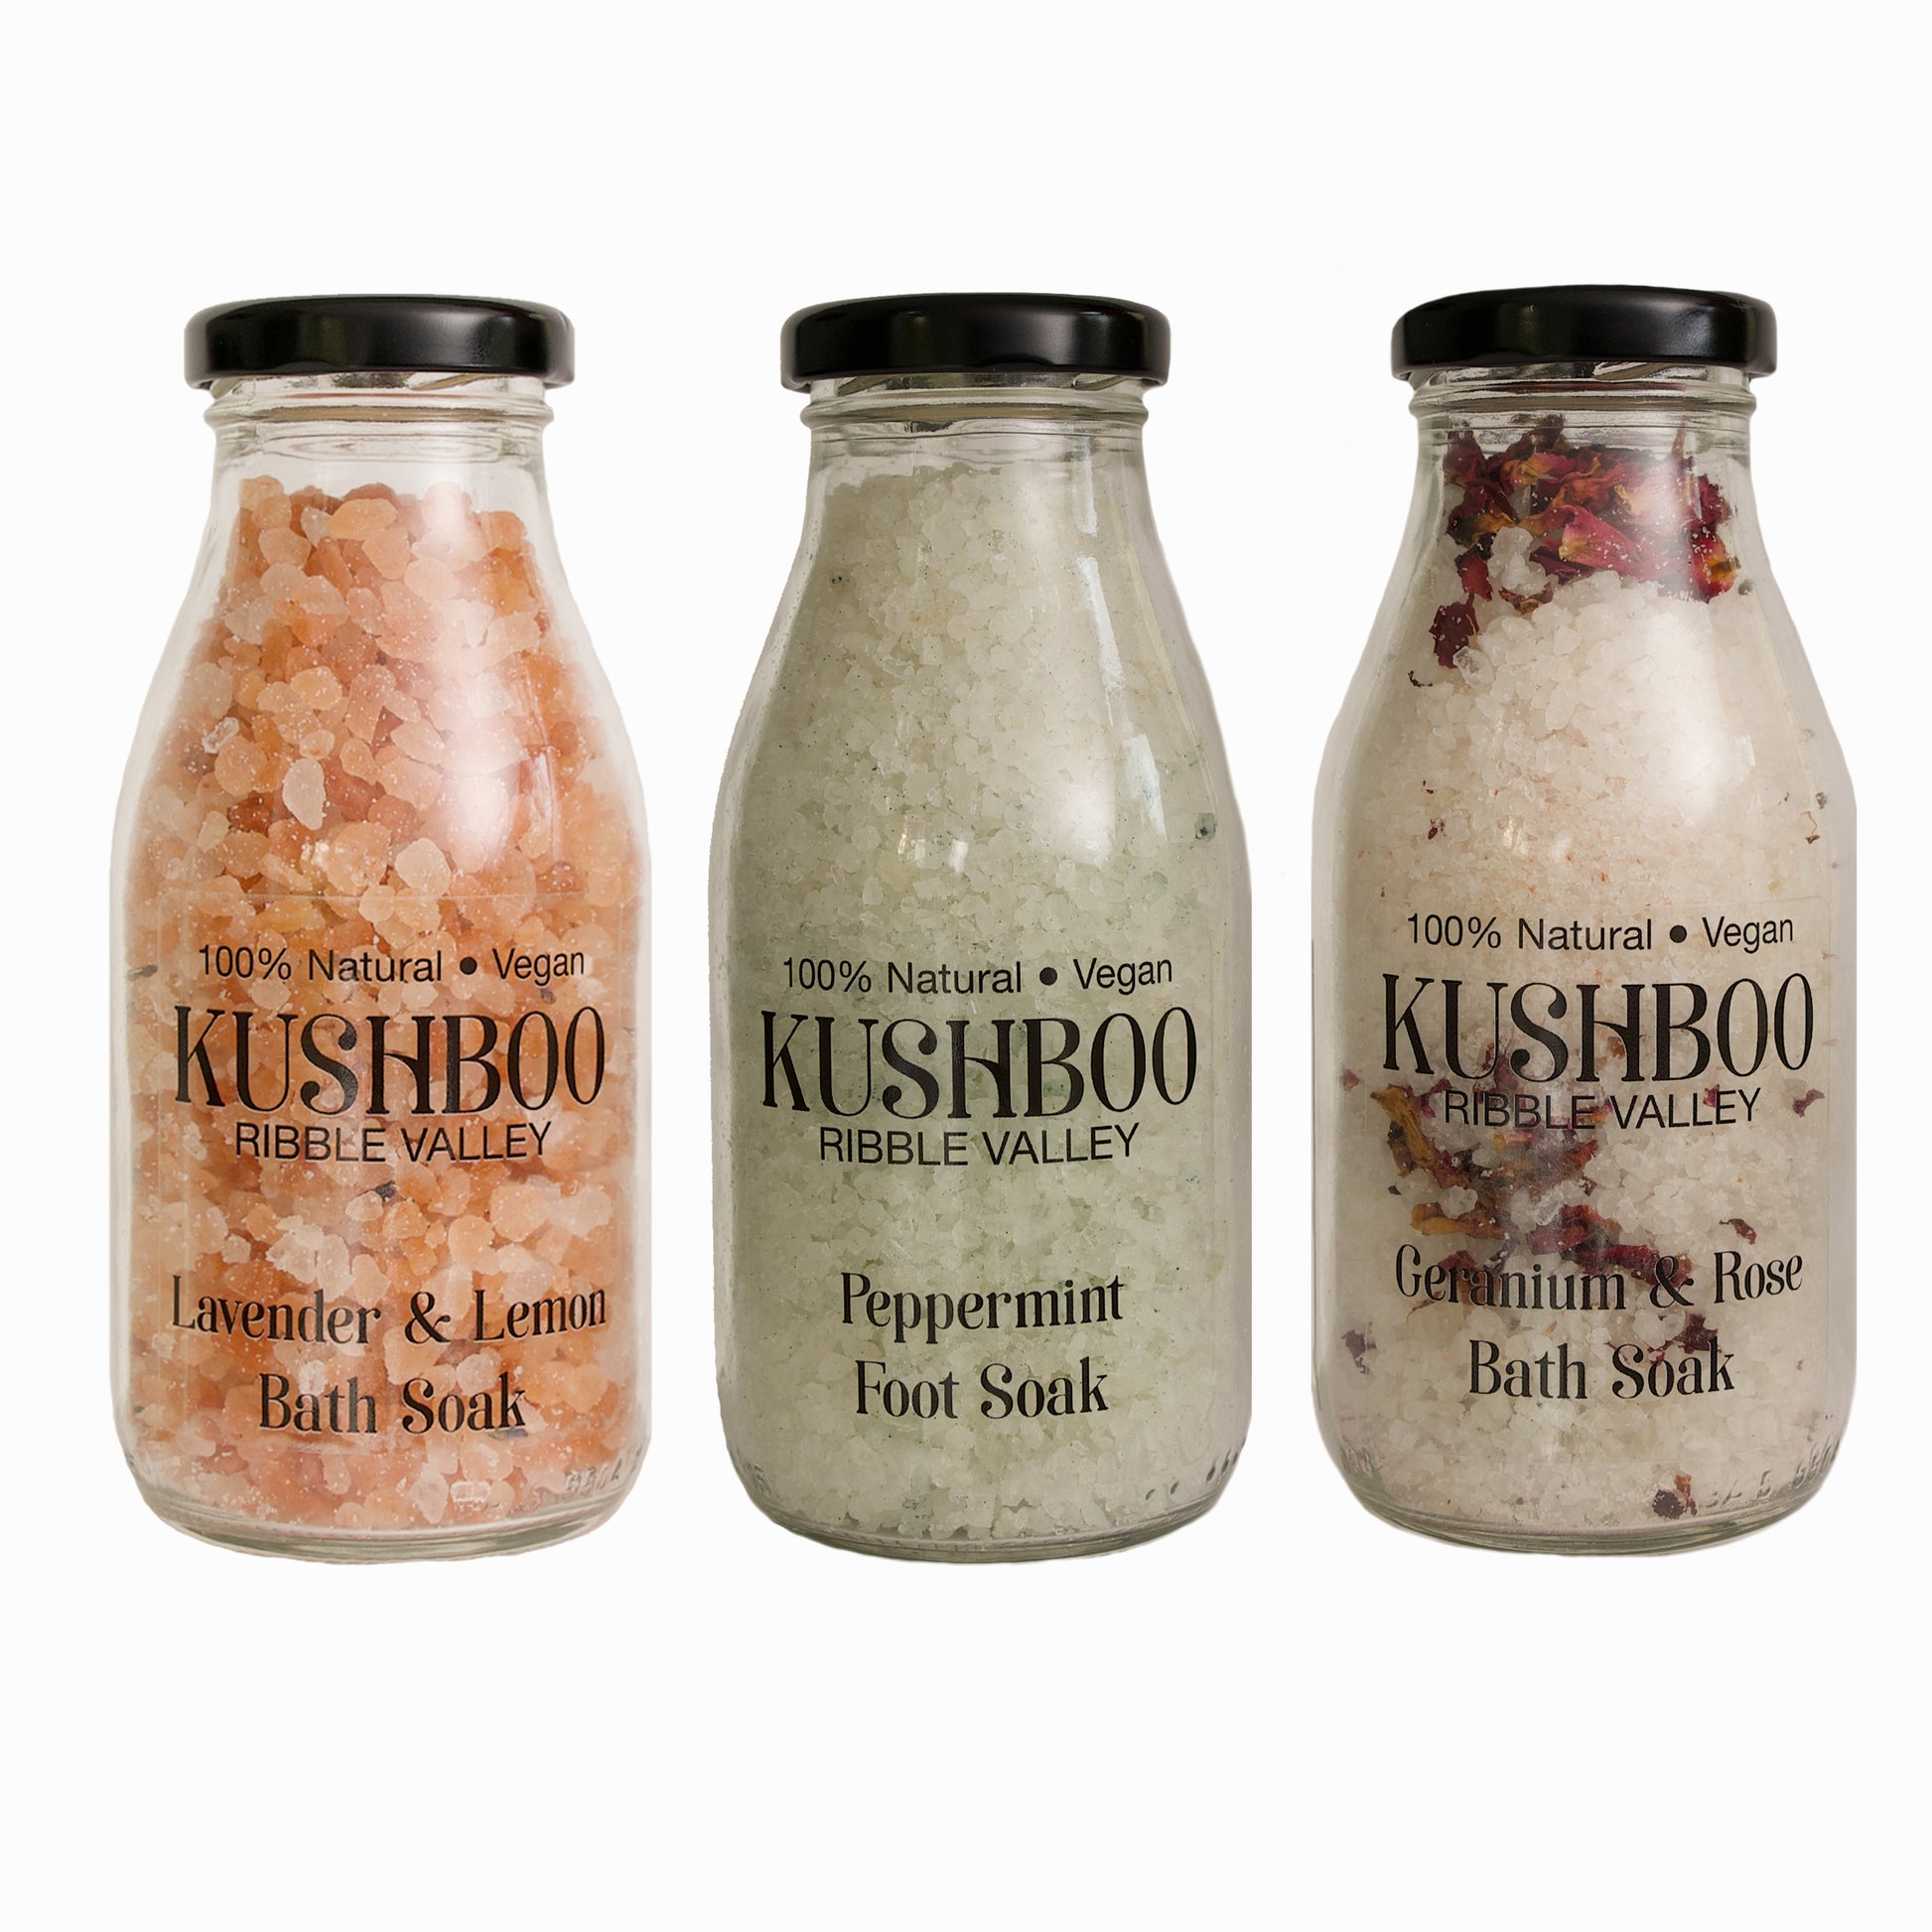 Kushboo Peppermint Foot Soak Milk Bottle